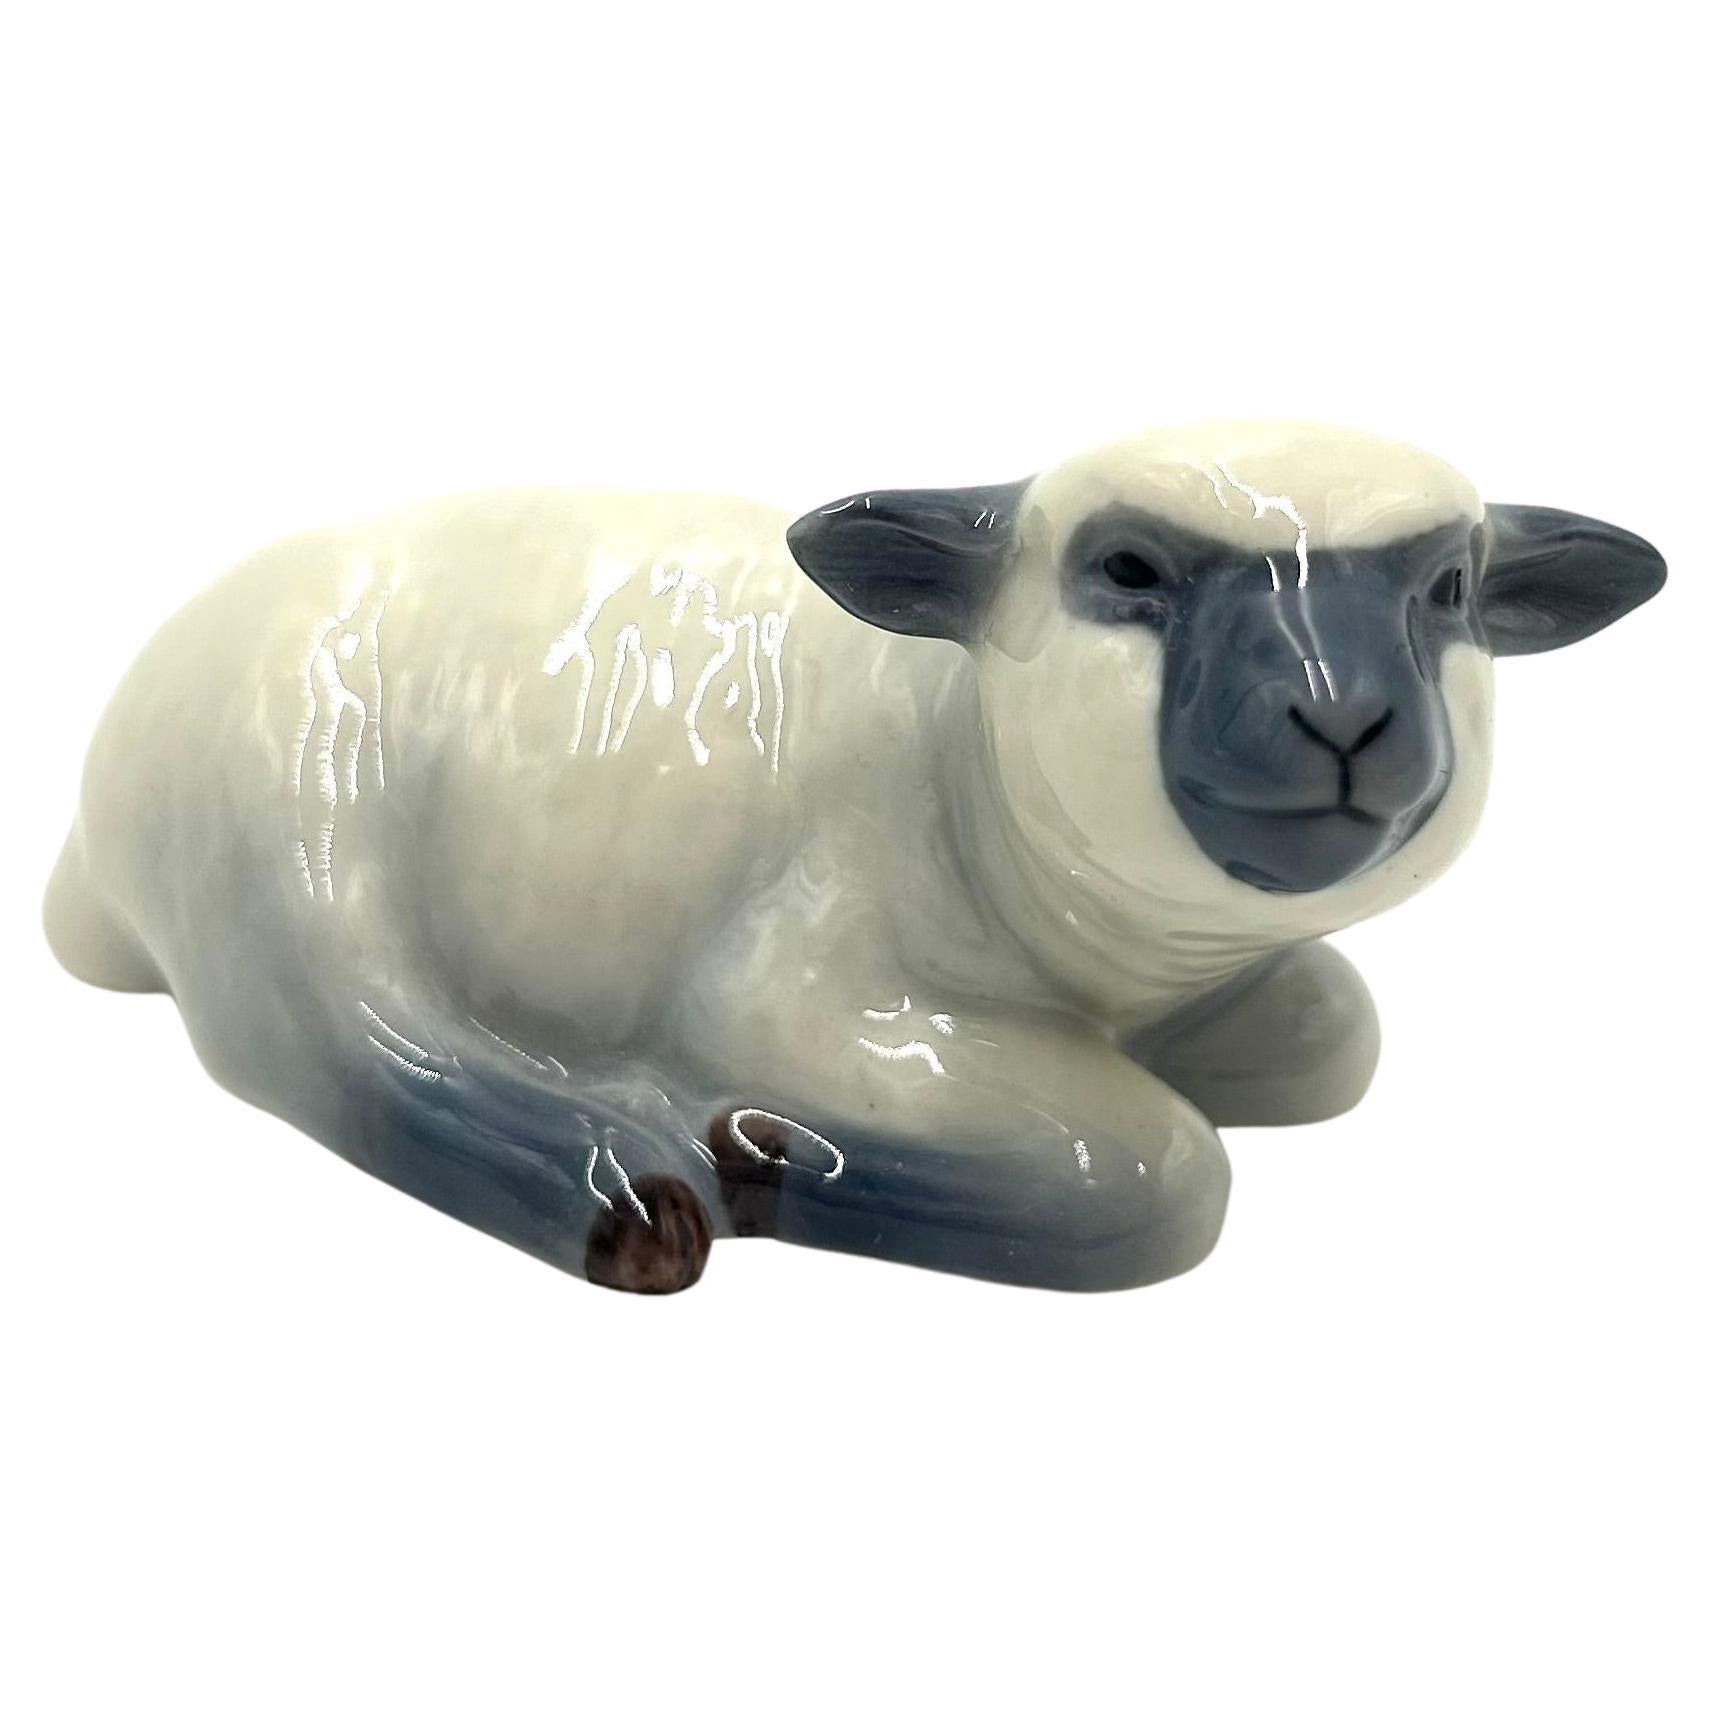 Porcelain Figurine "Sheep", Royal Copenhagen, Denmark